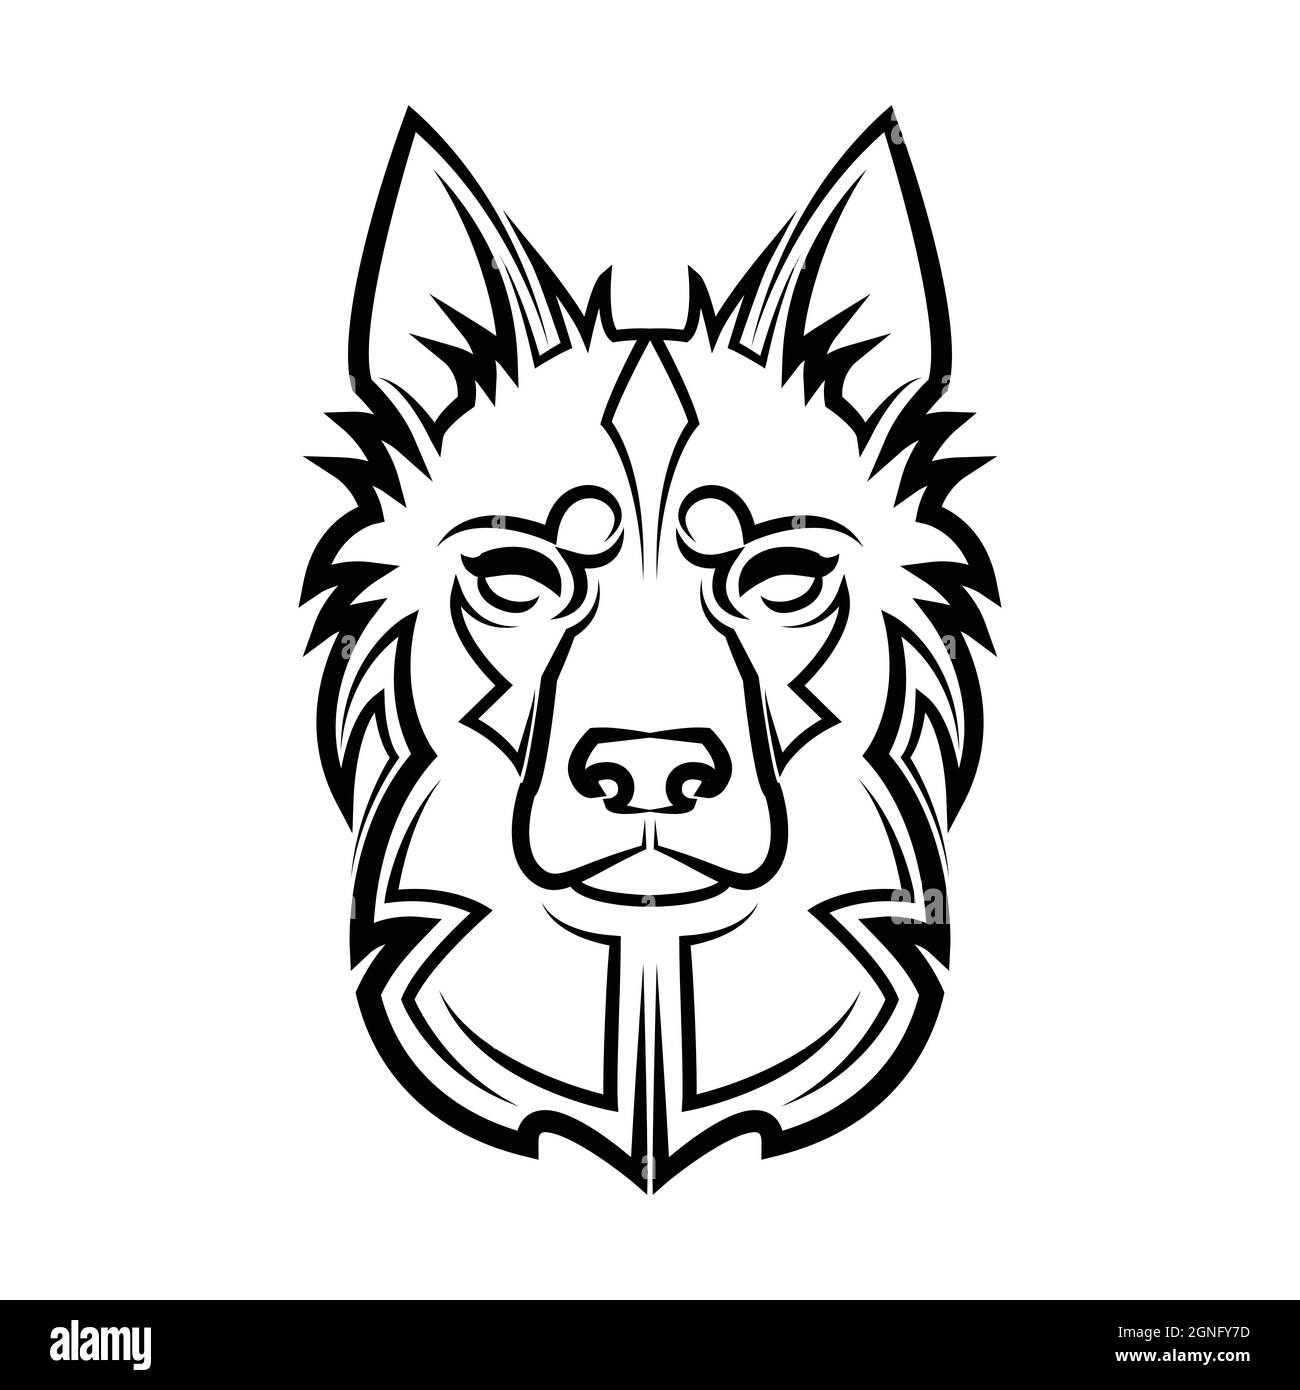 Art noir et blanc de la tête de berger allemande. Bon usage pour symbole, mascotte, icône, avatar, tatouage, T-shirt, logo ou tout autre motif Illustration de Vecteur